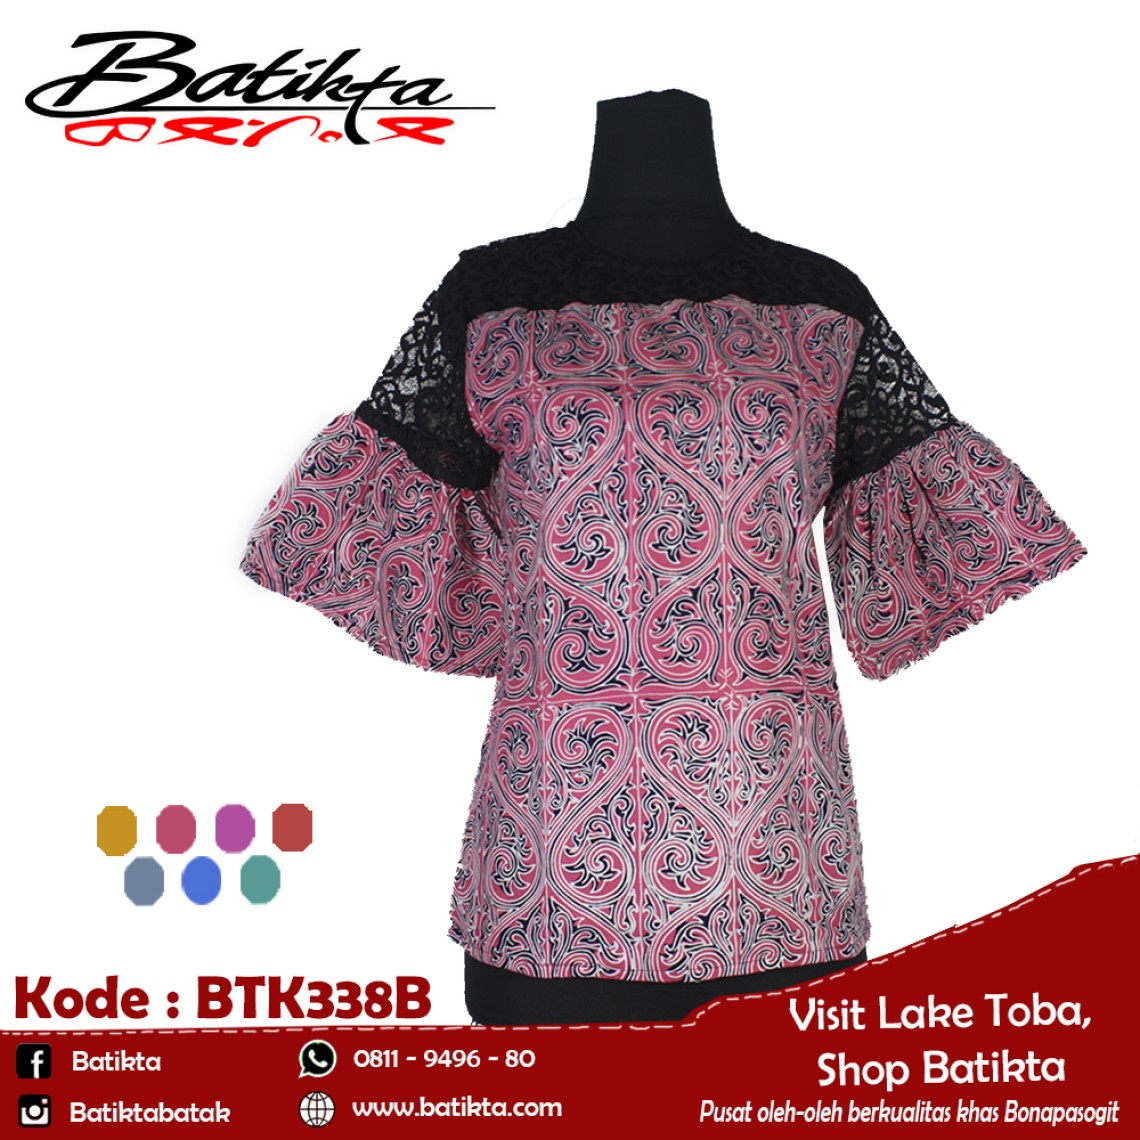 BTK338B Blus Batik Motif Gorga Warna Pink Putih Hitam profile picture